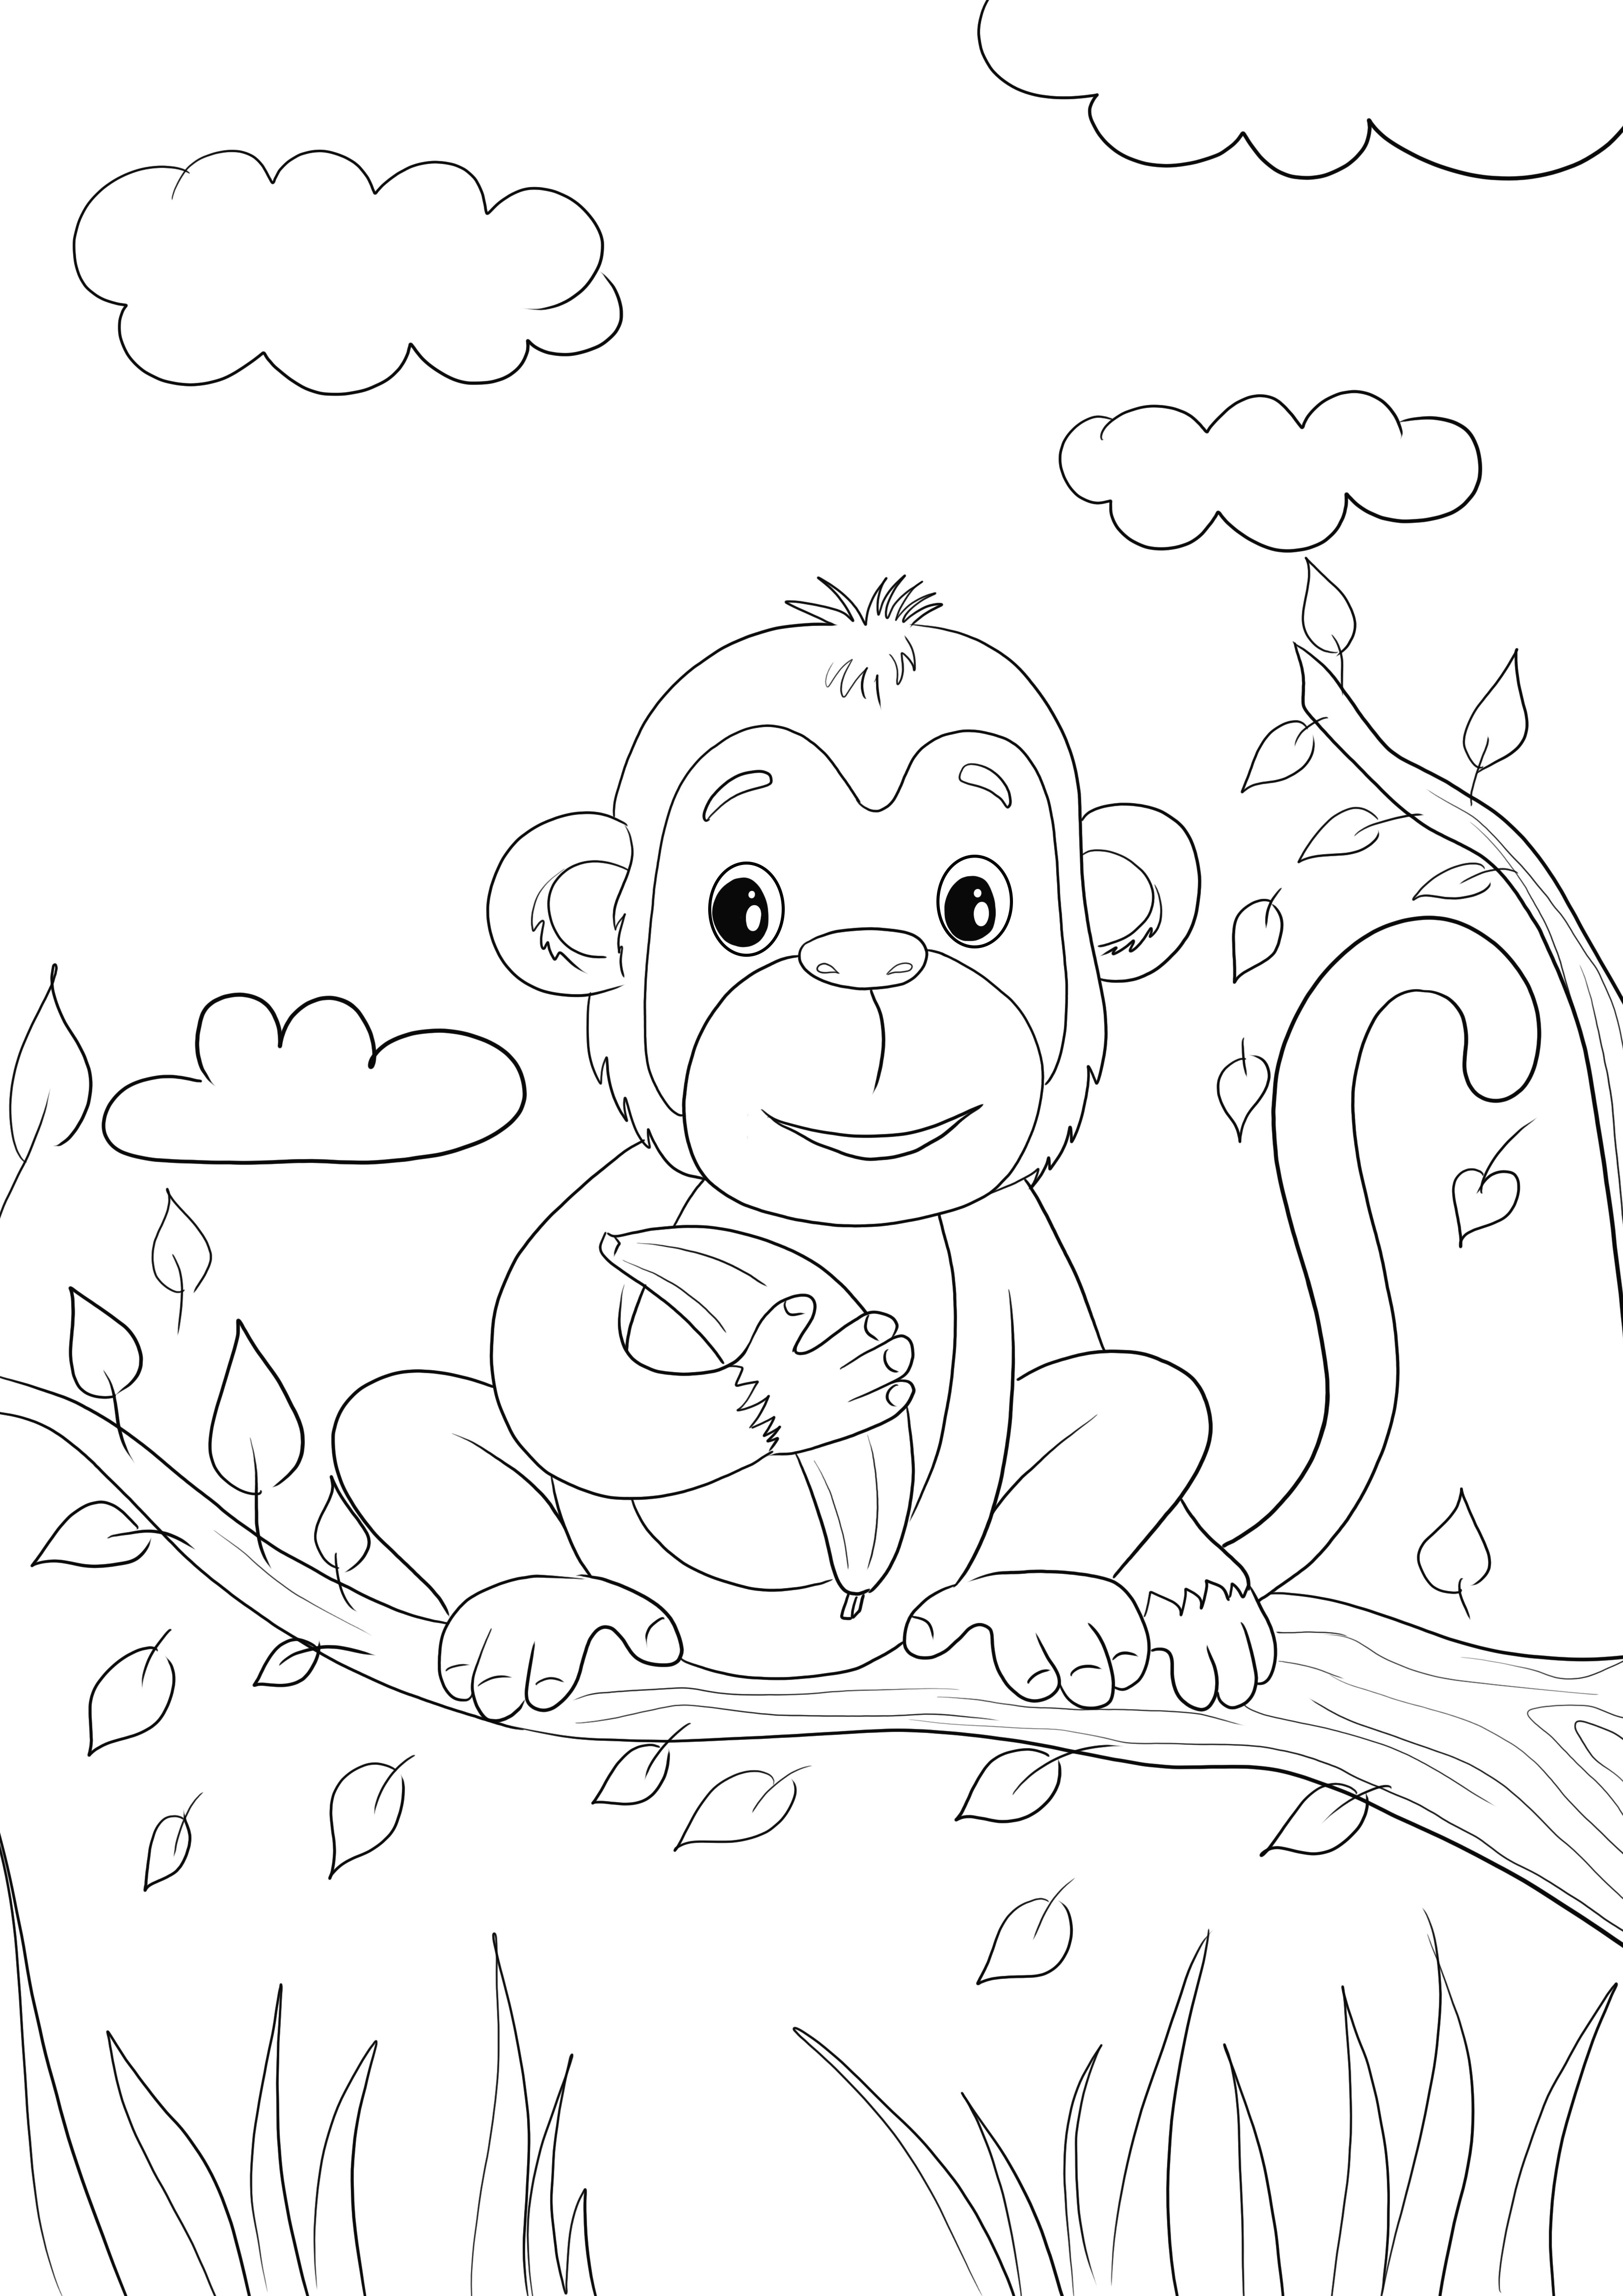 Iată un pui de maimuță drăguț ținând o banană imagine de colorat gratuit pentru a fi imprimat sau salvat pentru mai târziu